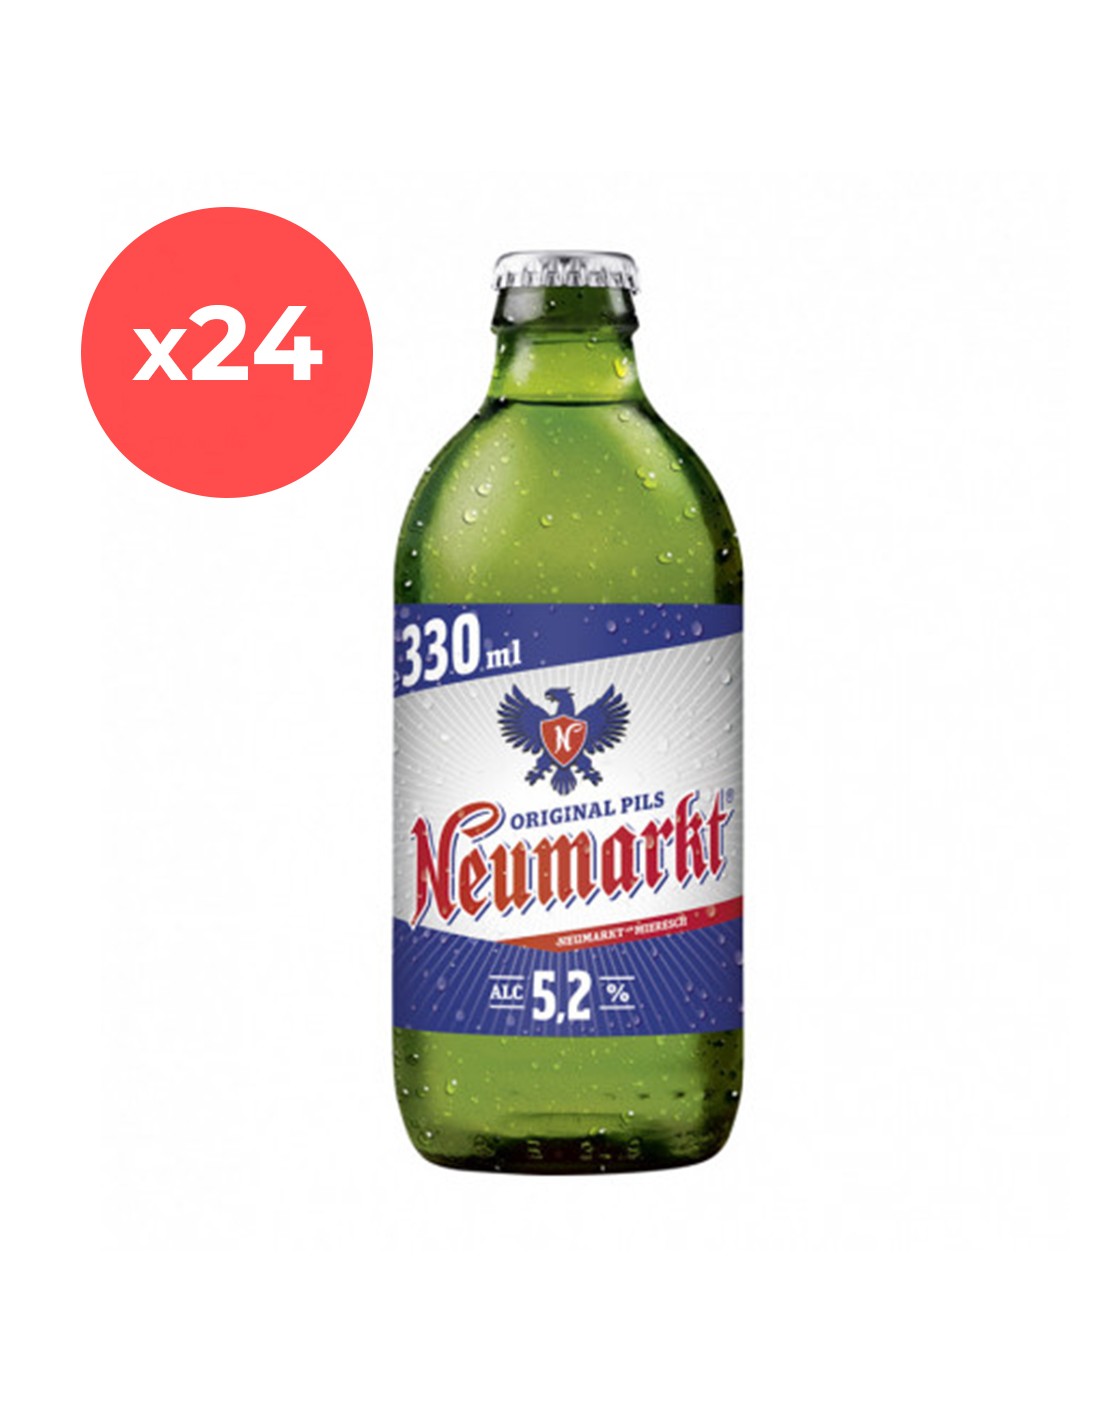 Bax 24 bucati bere blonda, filtrata Neumarkt, 5.2% alc., 0.33L, sticla alcooldiscount.ro